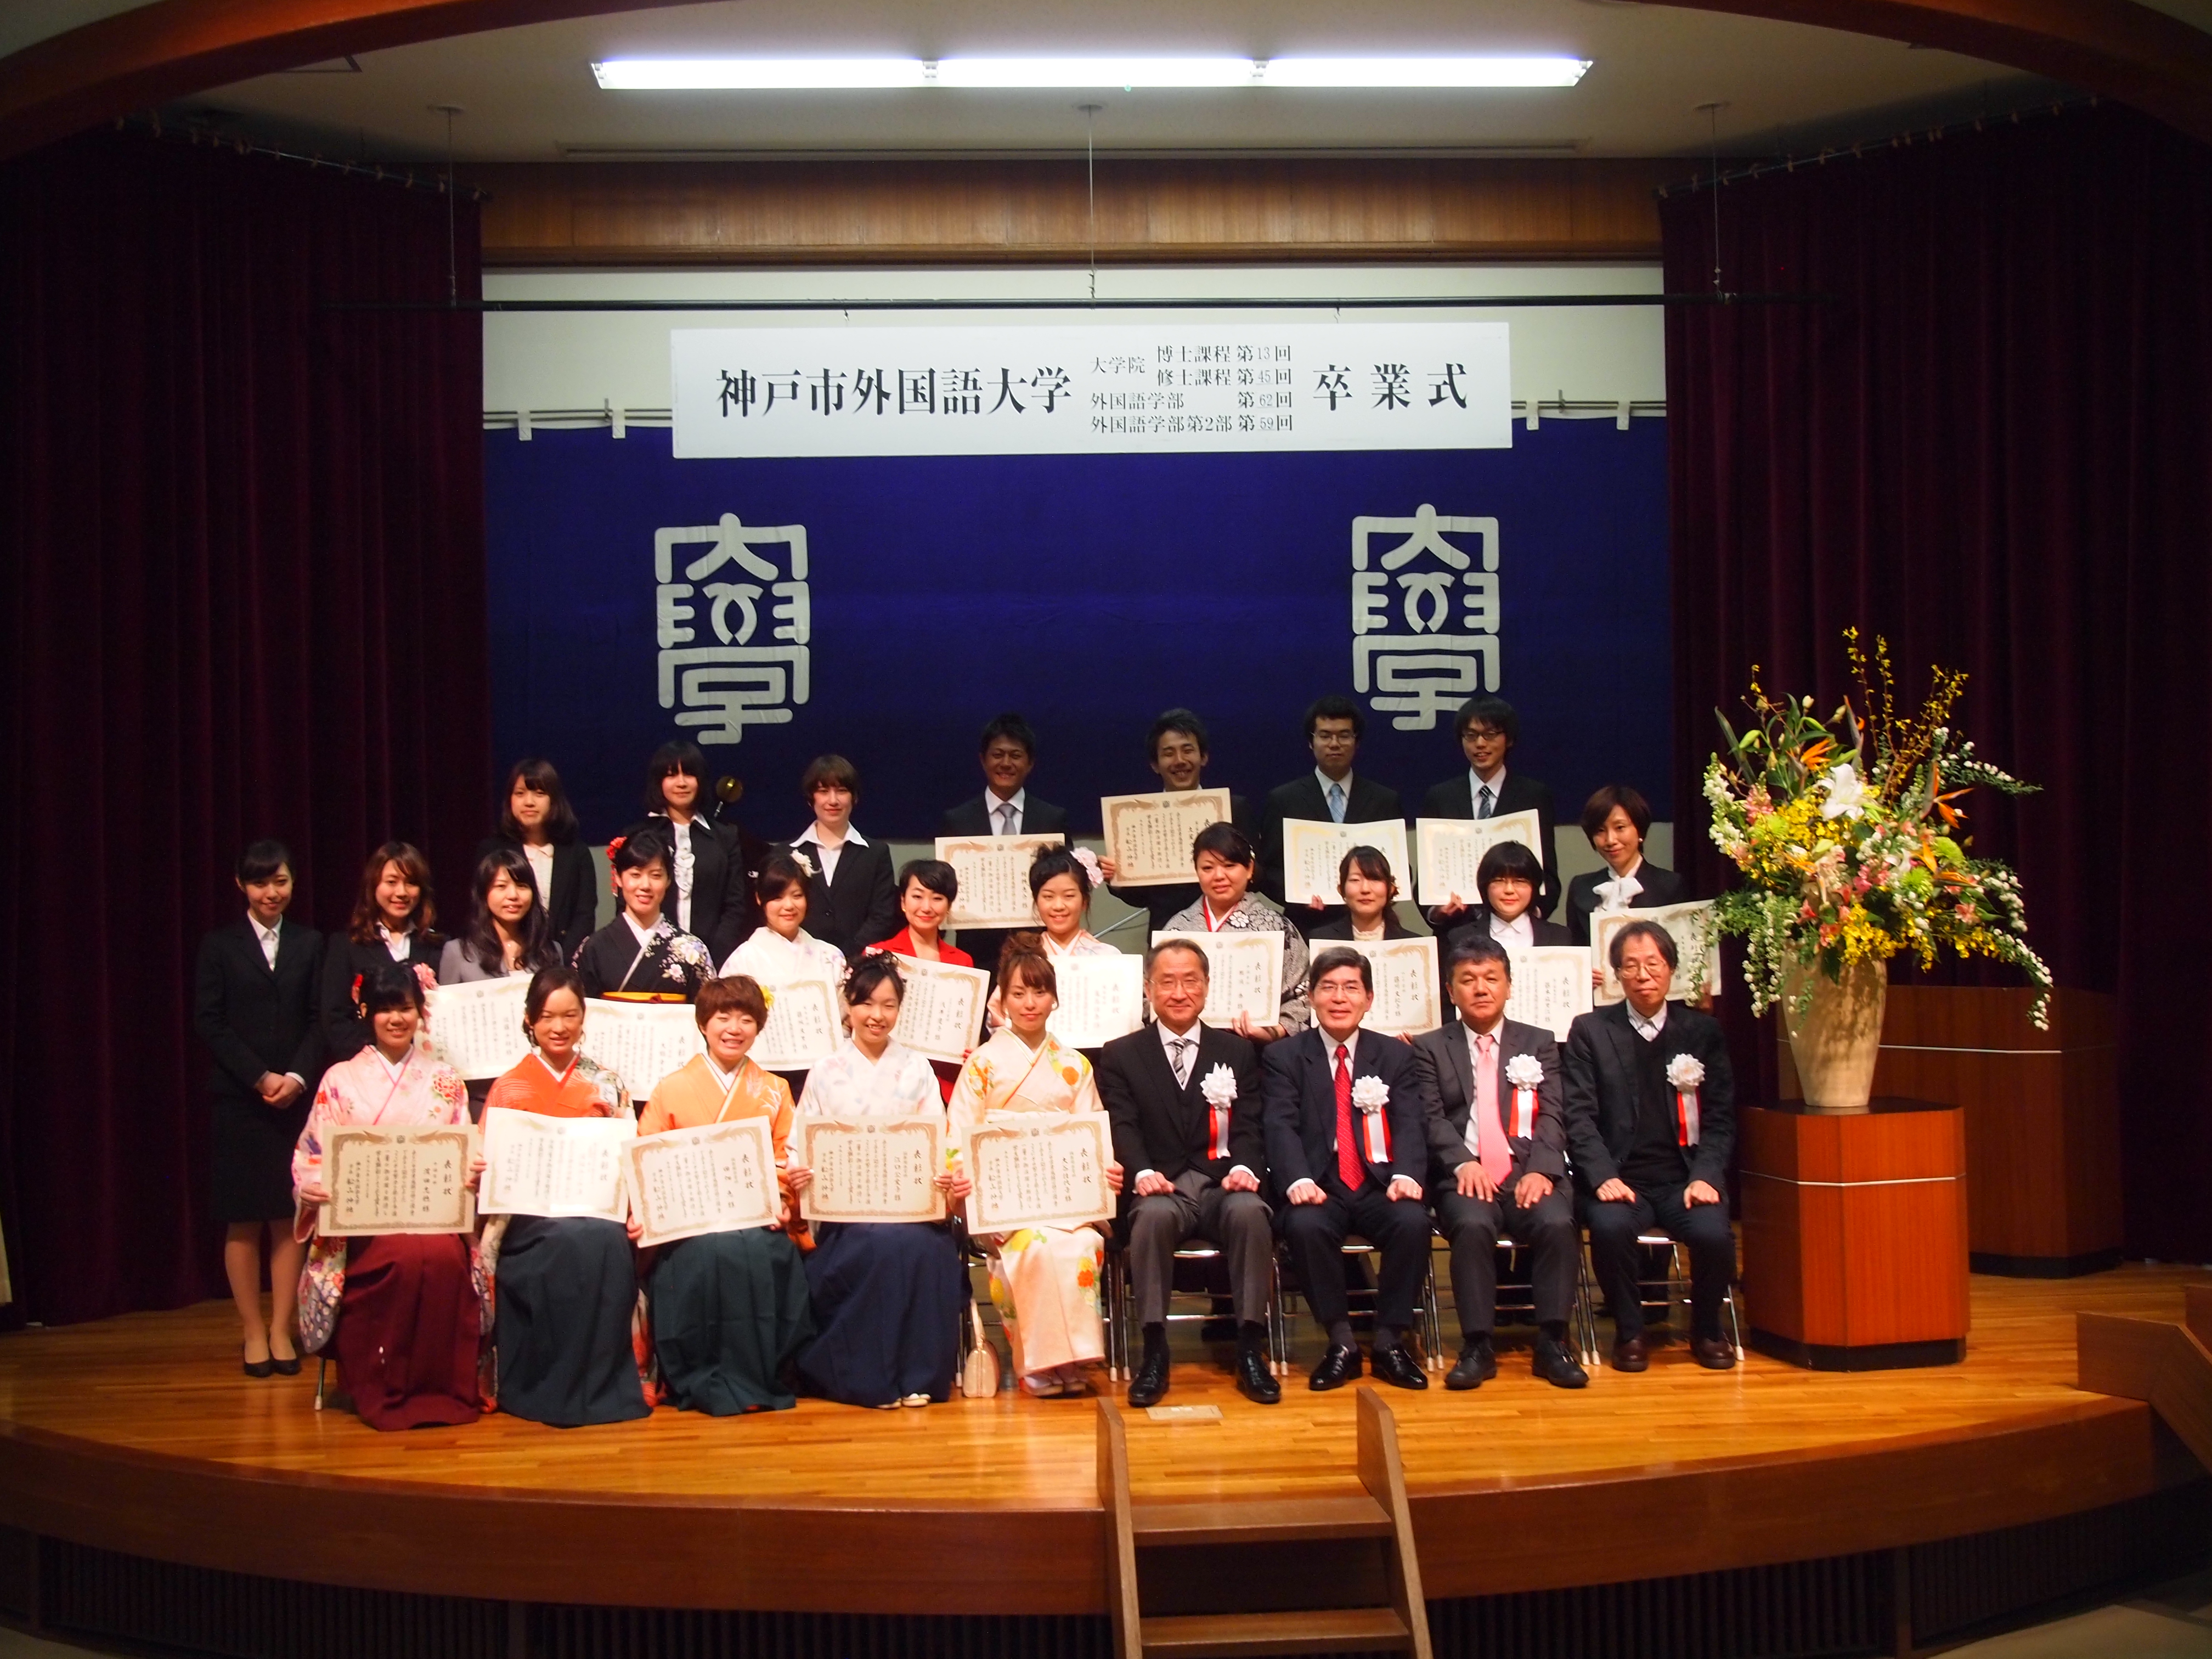 2012年度学生顕彰受賞者